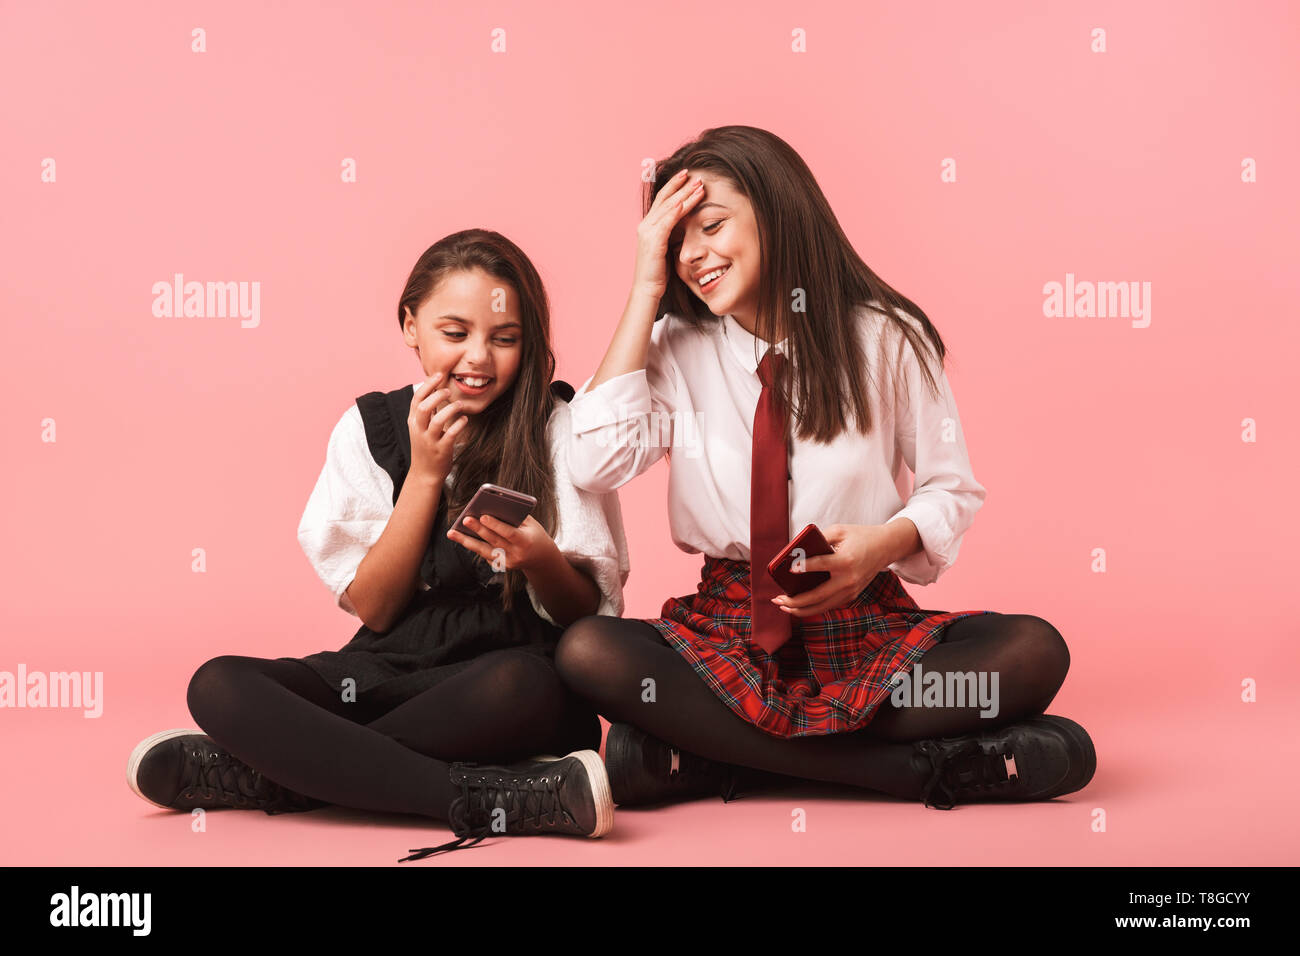 Ritratto di ragazze sorridenti in uniforme scolastica utilizzando i telefoni cellulari mentre è seduto sul pavimento isolato su sfondo rosso Foto Stock